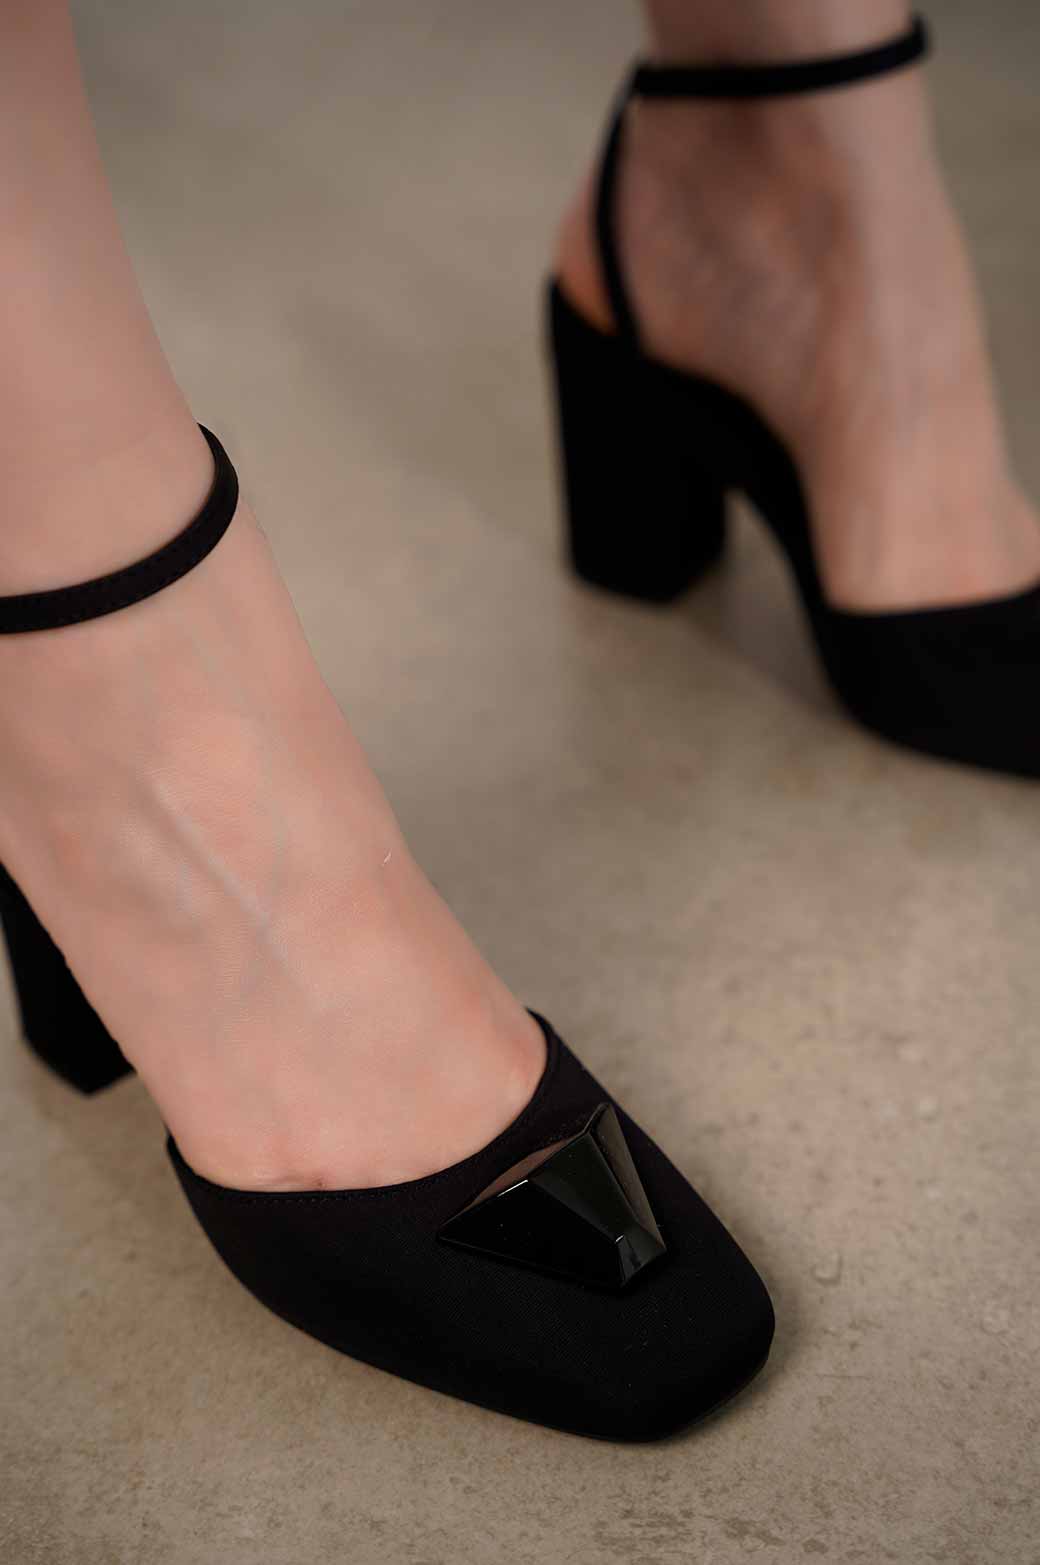 Champagne HERUV Studded Block Heel Platform Sandals | i The Label – I The  Label